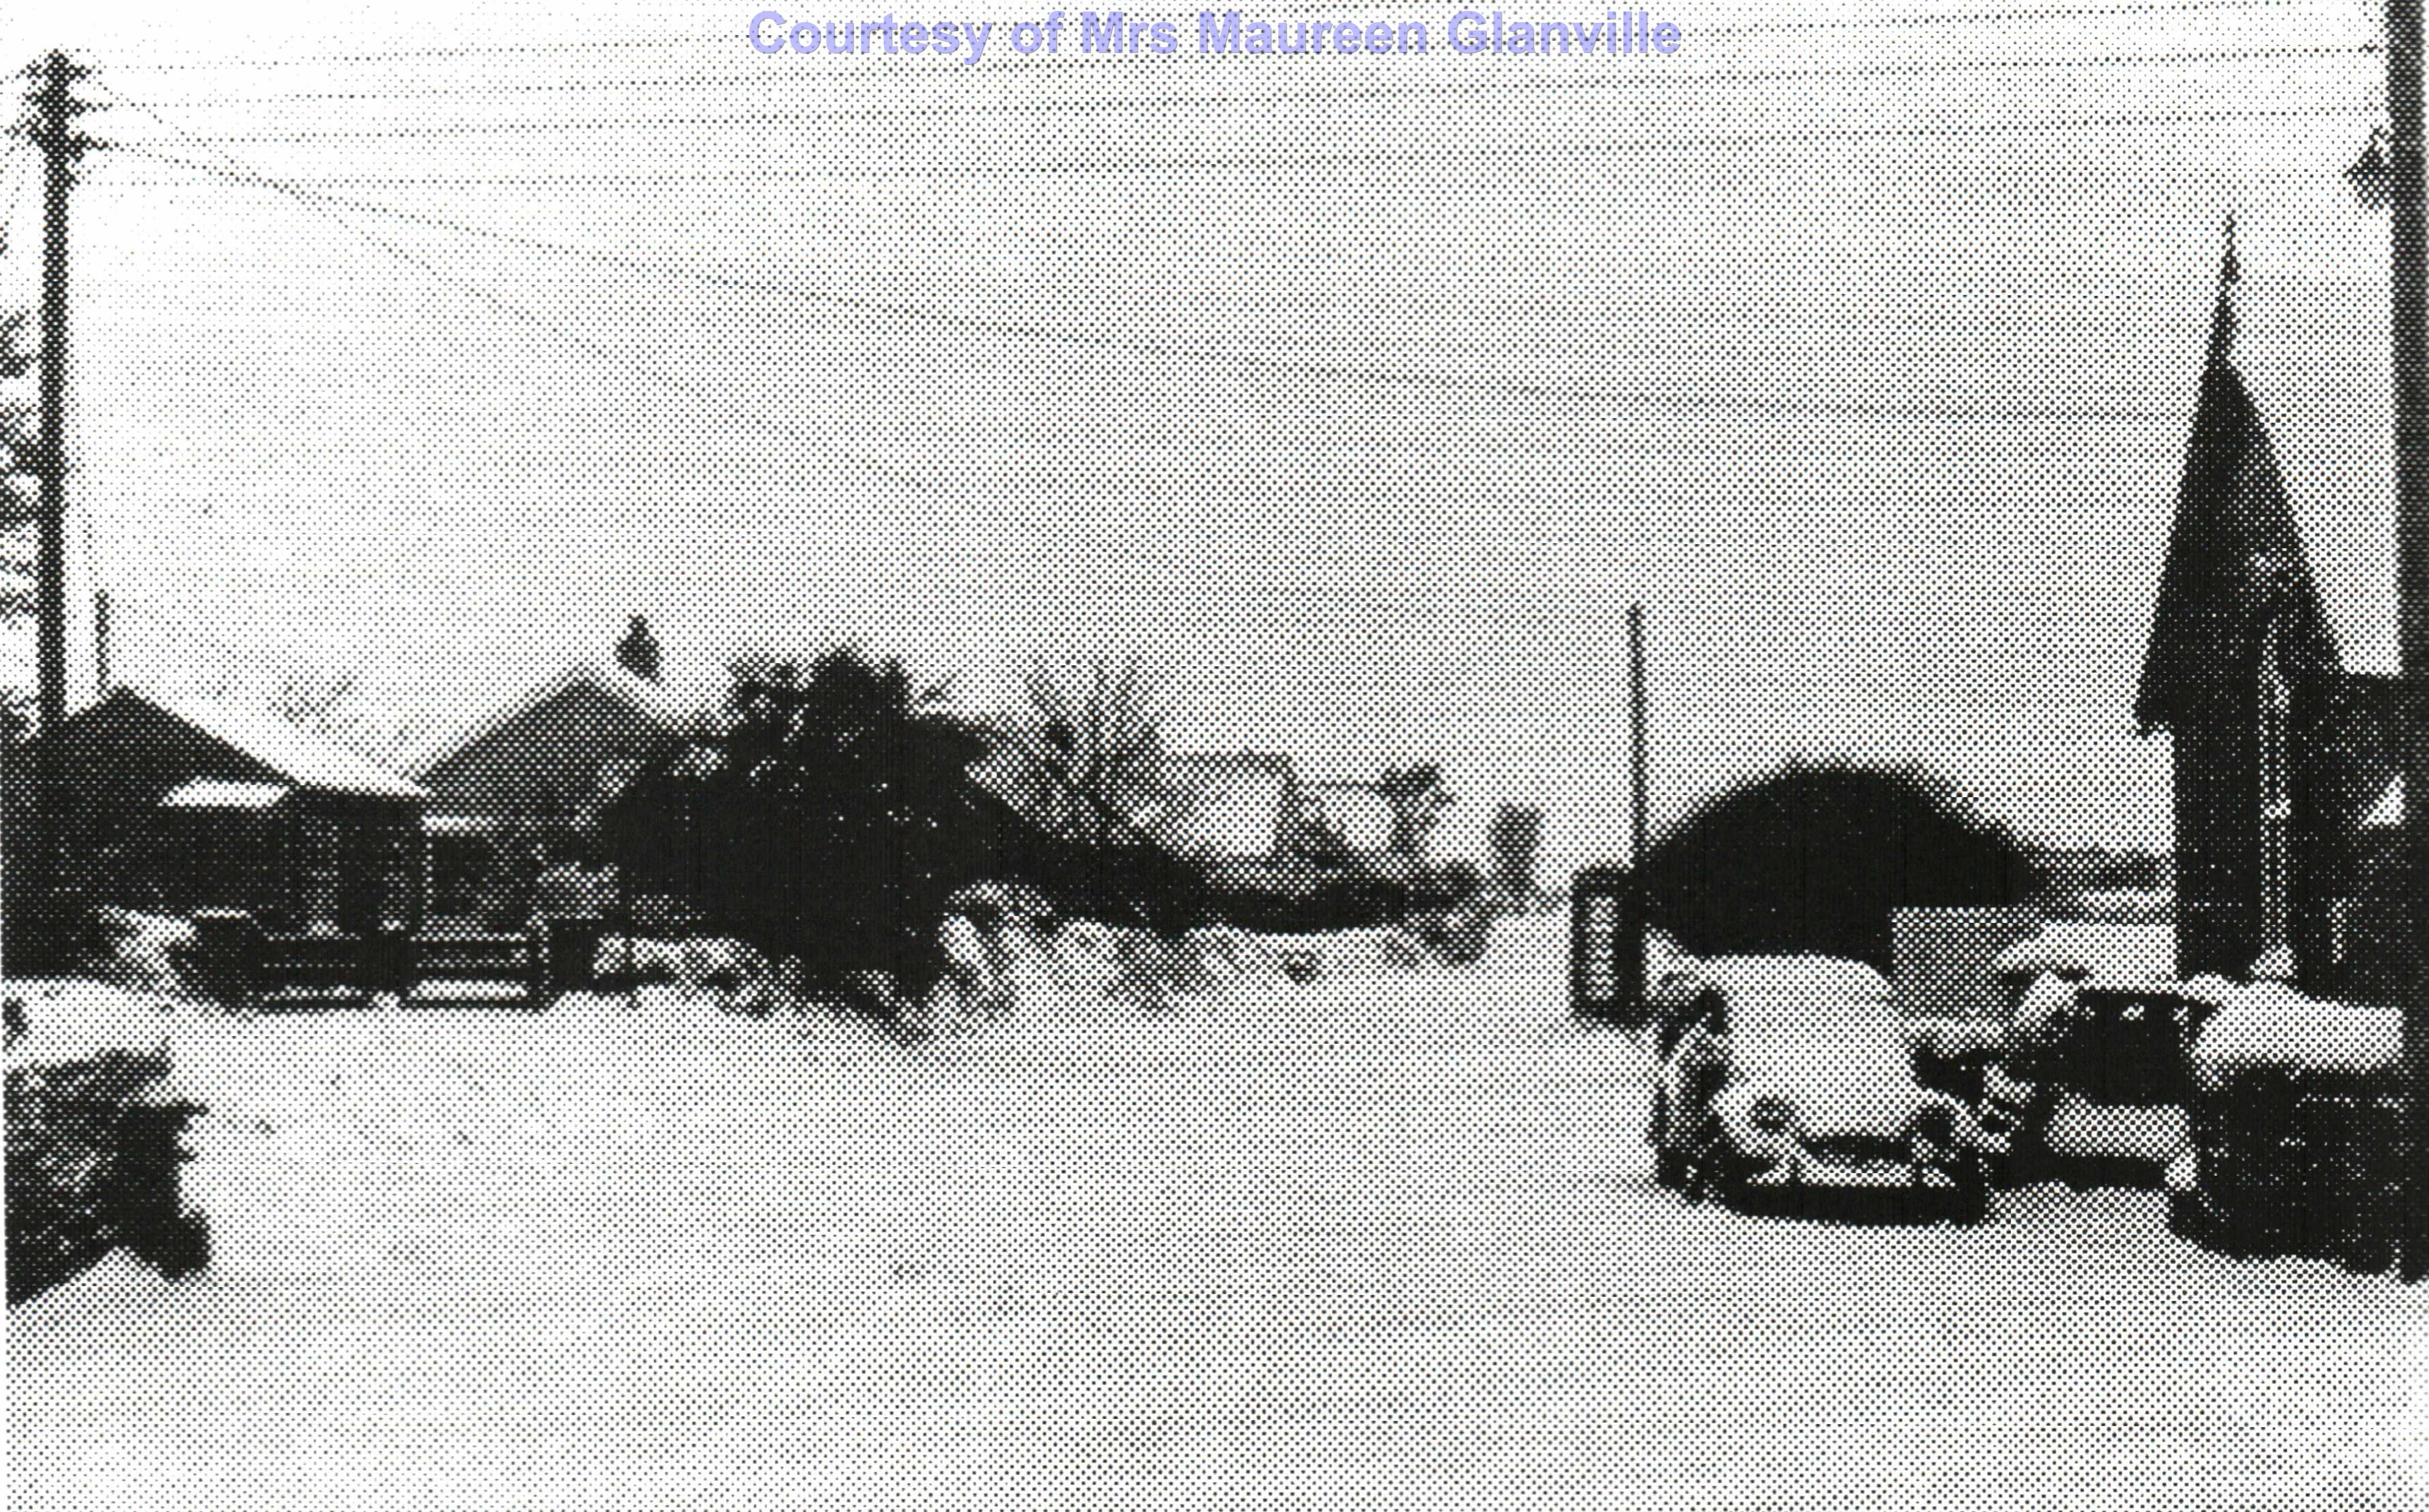 Rose Village in Snow - 1985